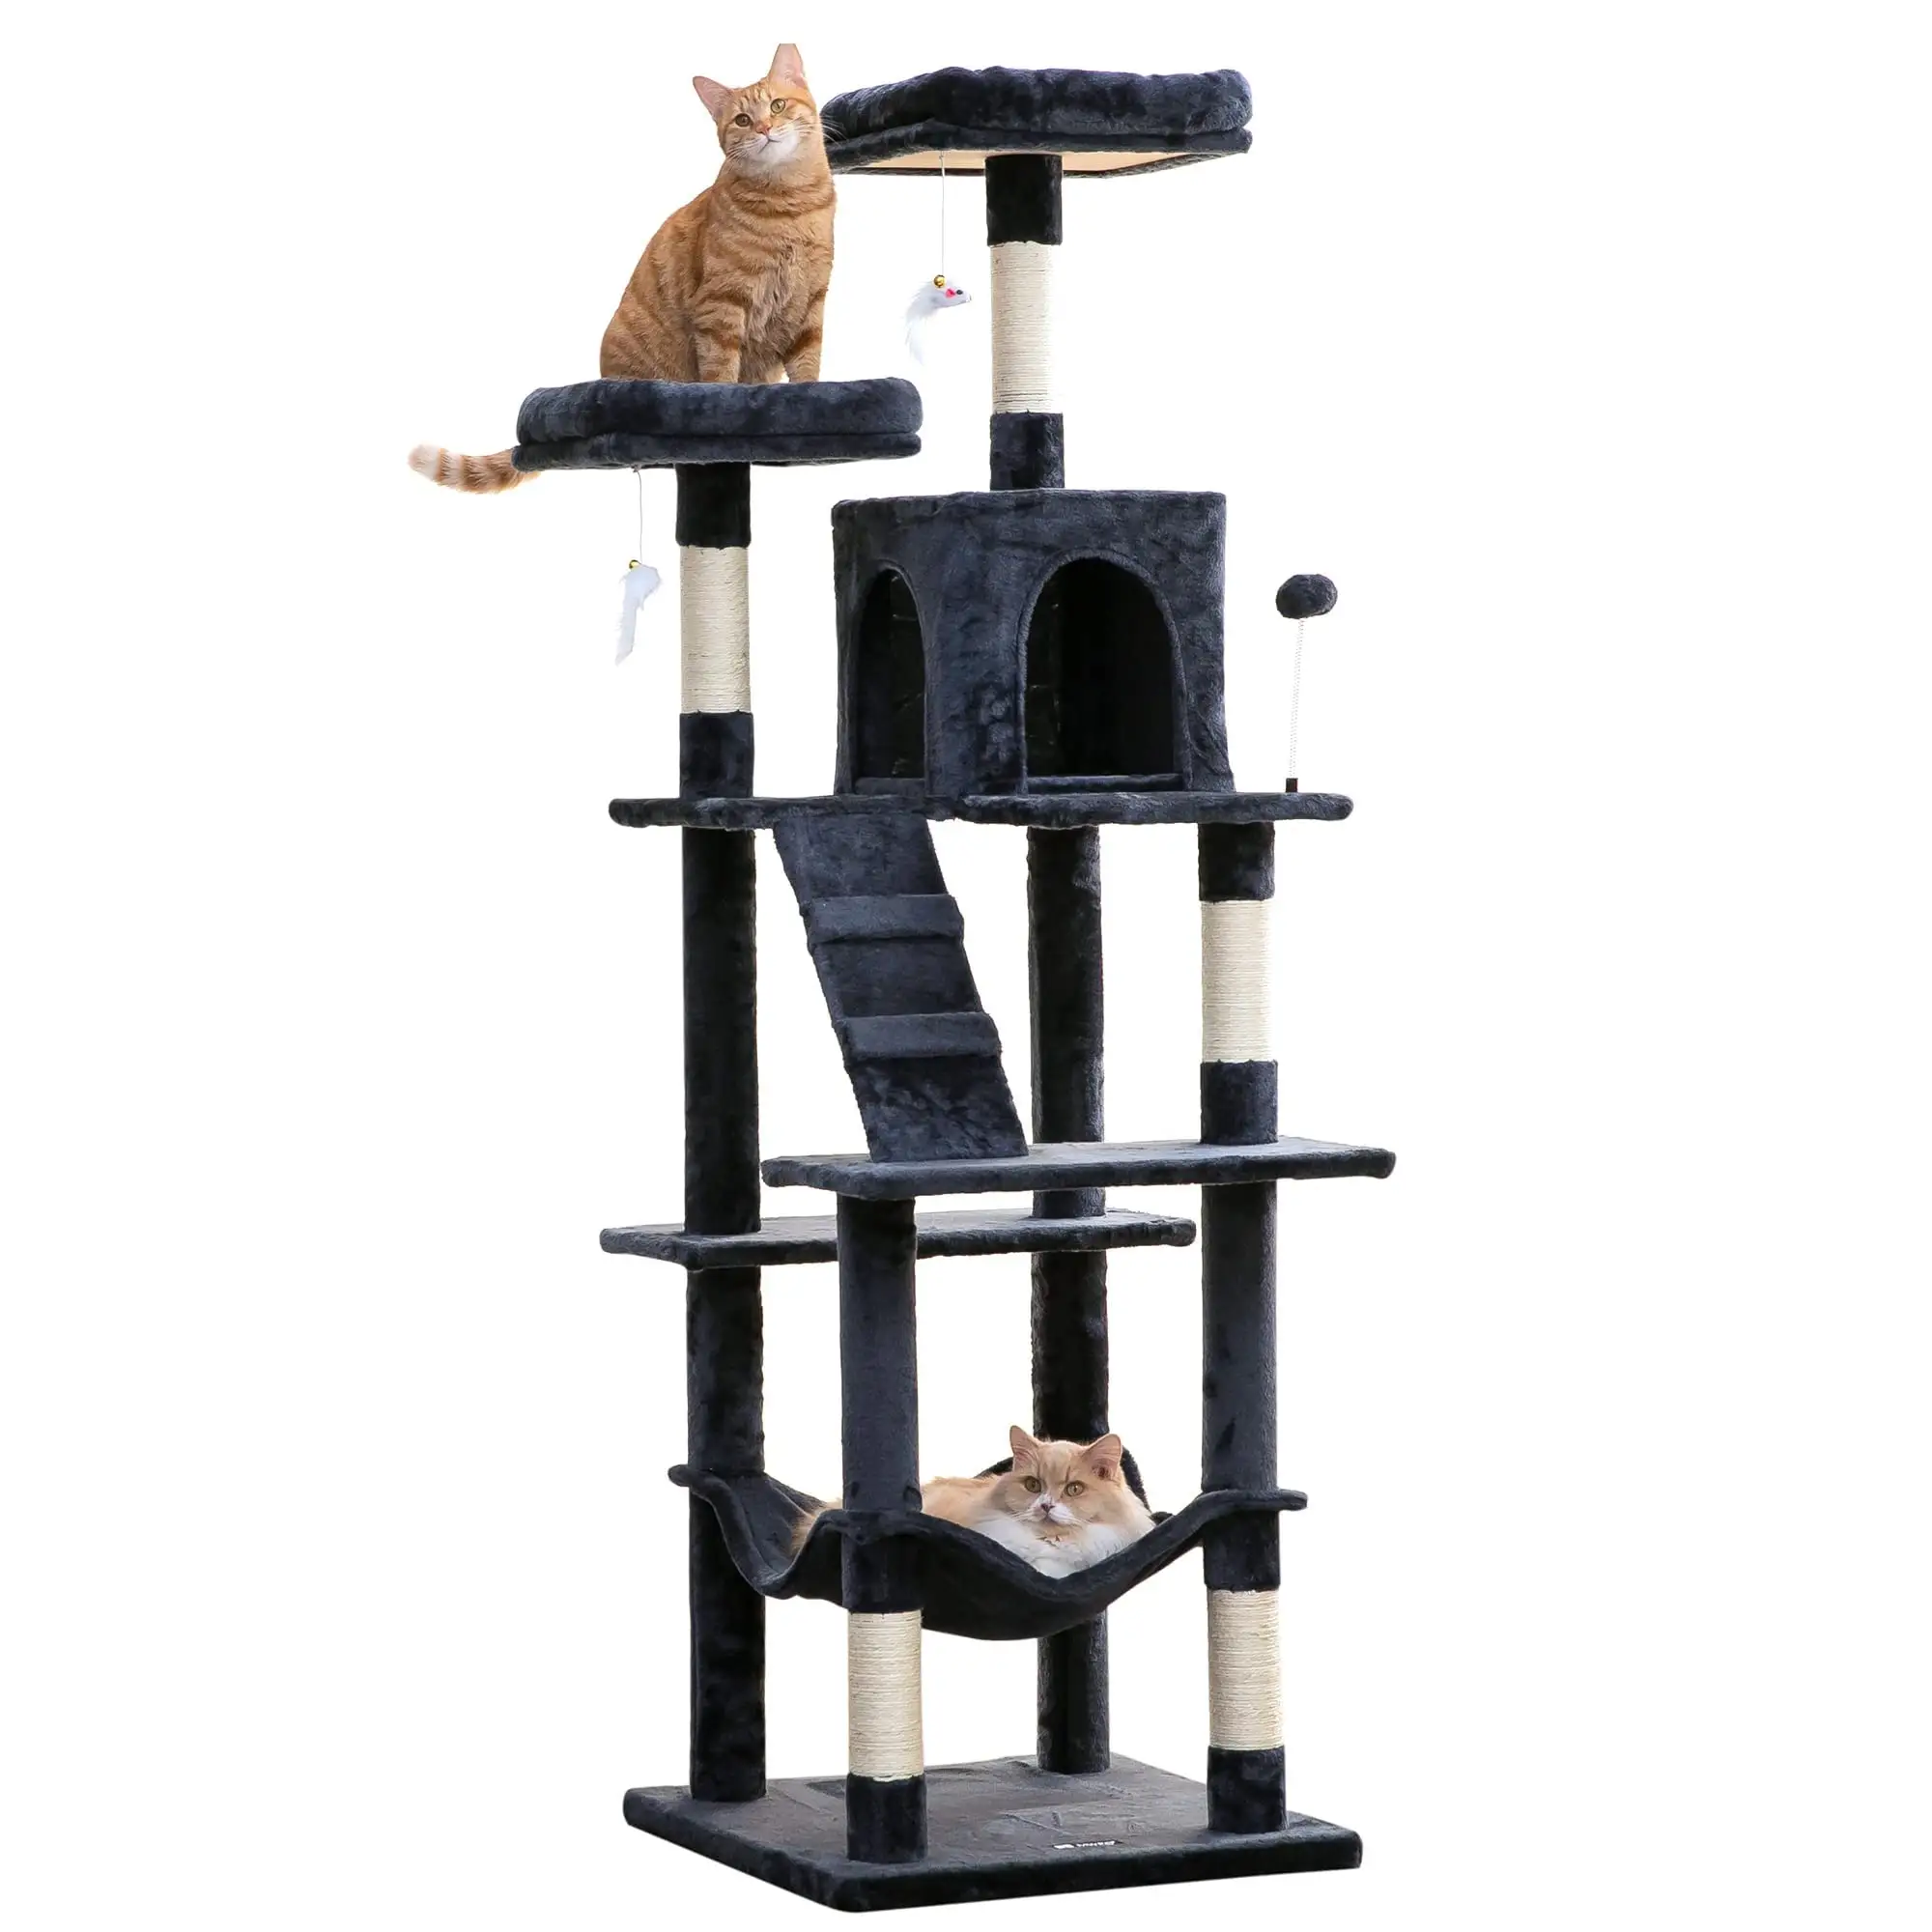 Design alberi di gatto per grandi gatti fornitura di qualità all'ingrosso di moda scatola su misura prodotti per animali domestici torre sostenibile albero di legno gatto